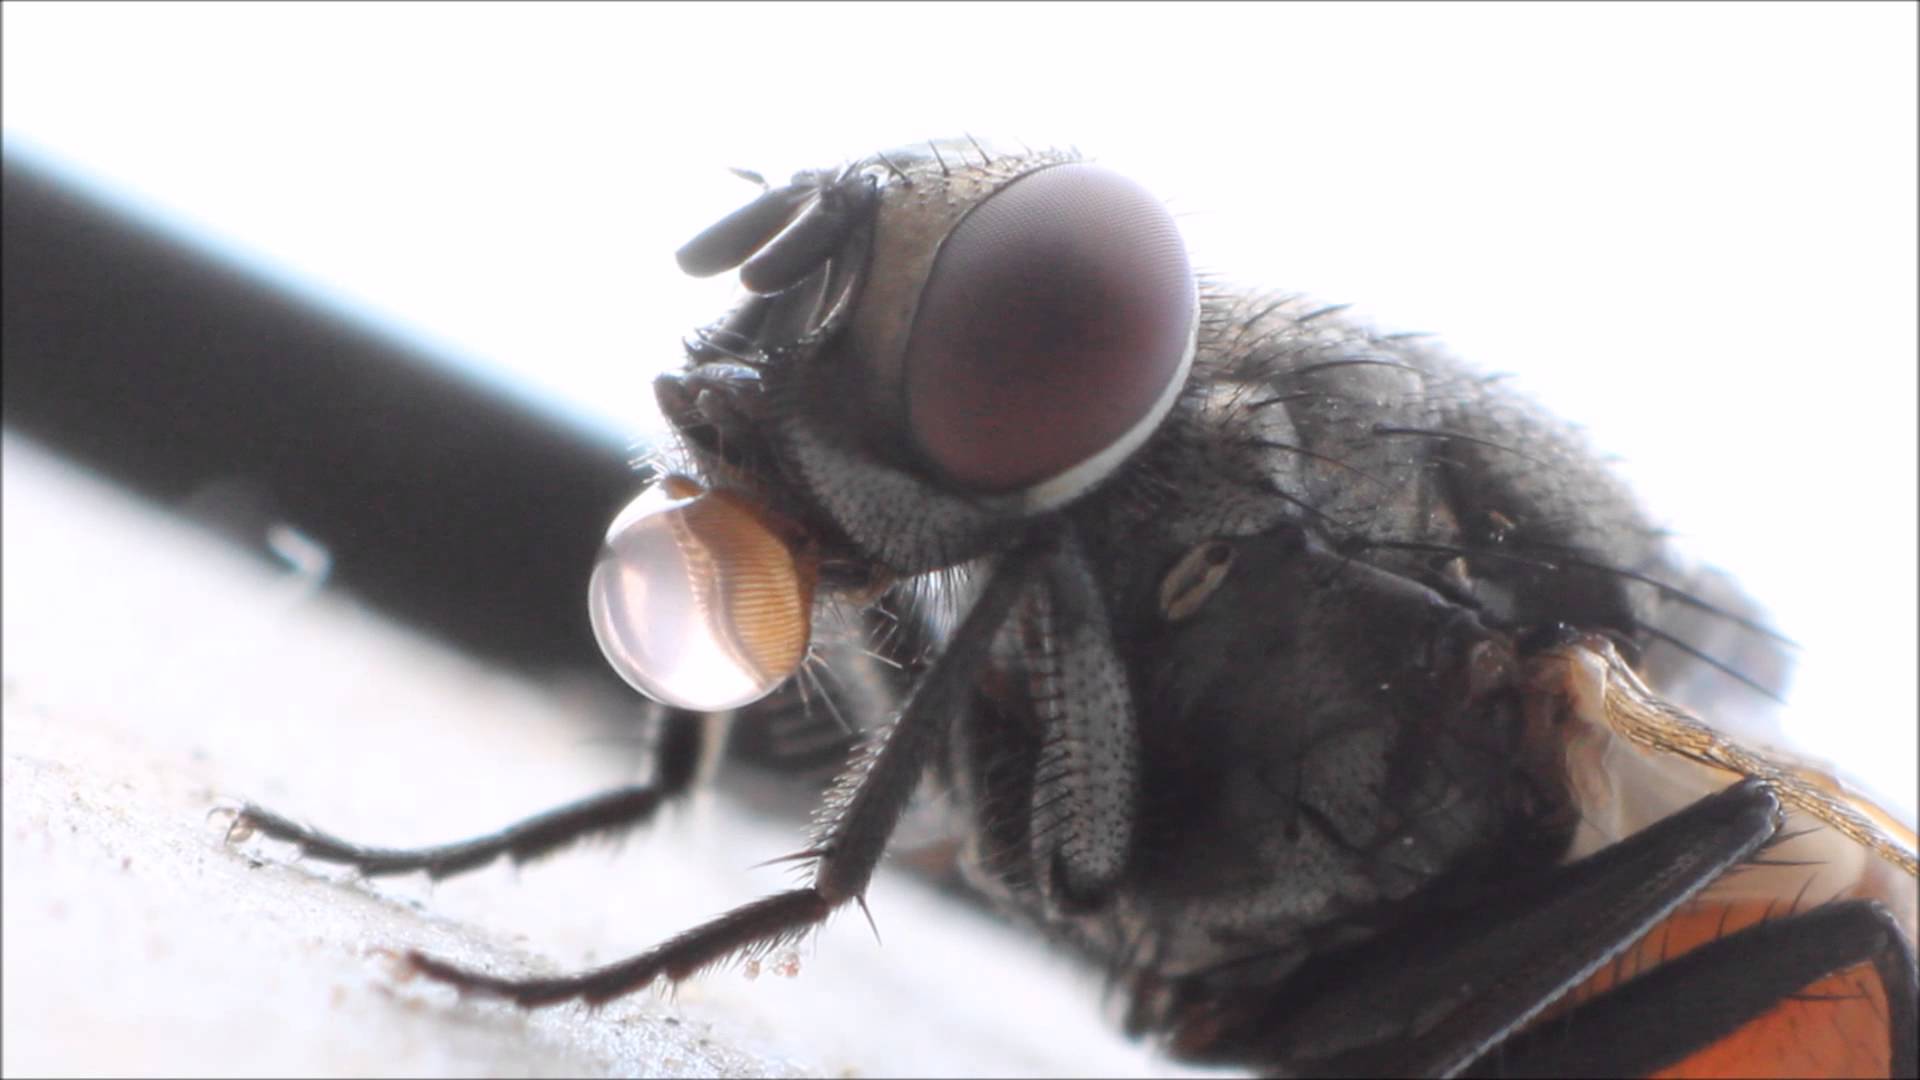 housefly eating something - YouTube